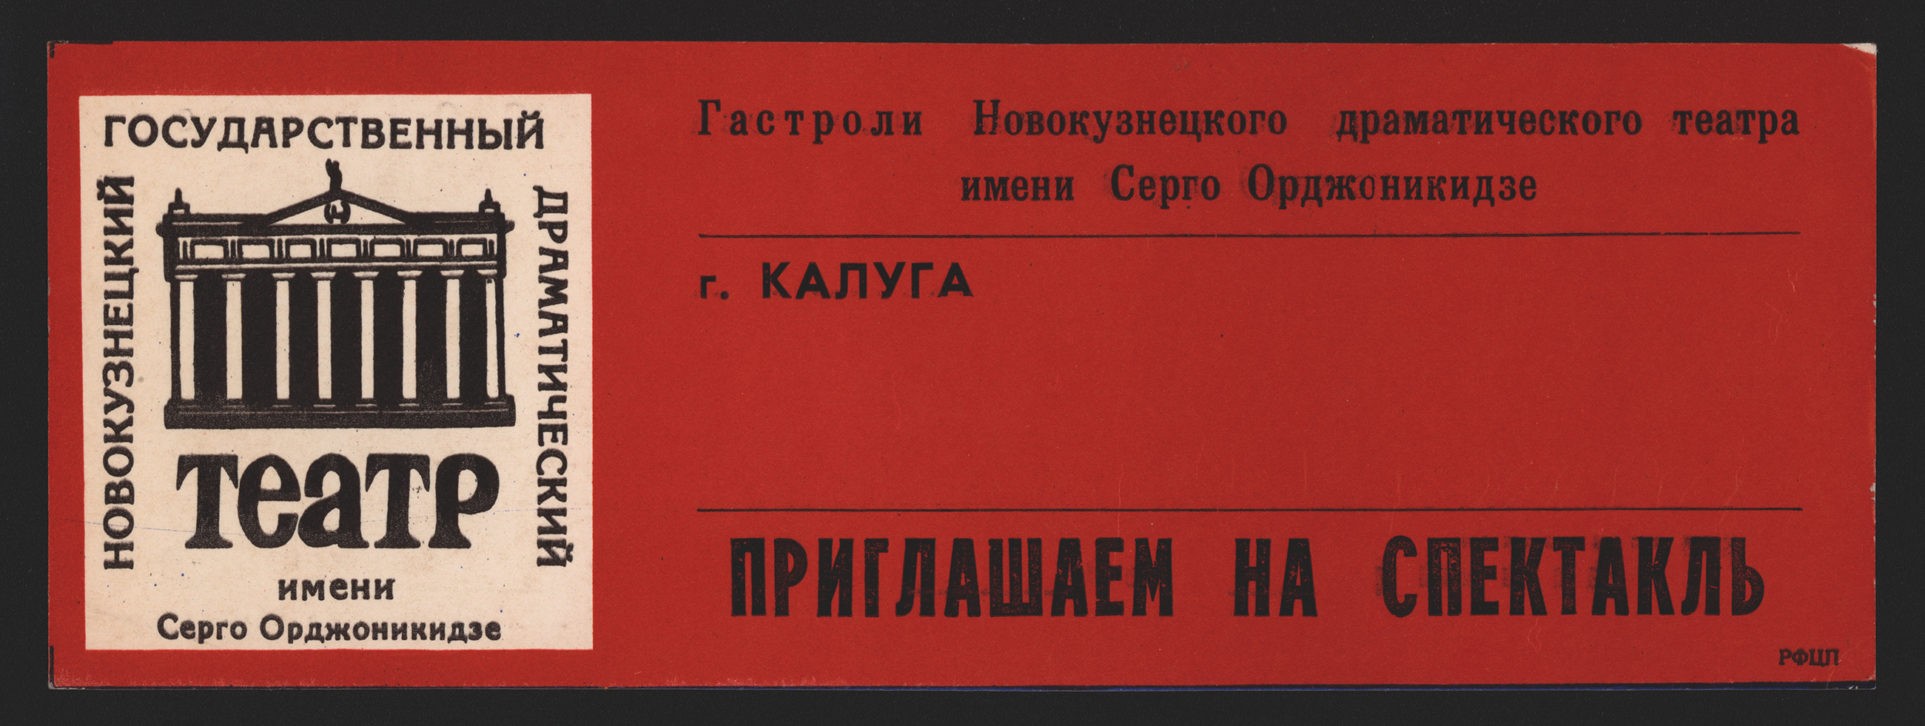 Гастроли Новокузнецкого драматического театра в г. Калуге, 1986 г.: пригласительный билет